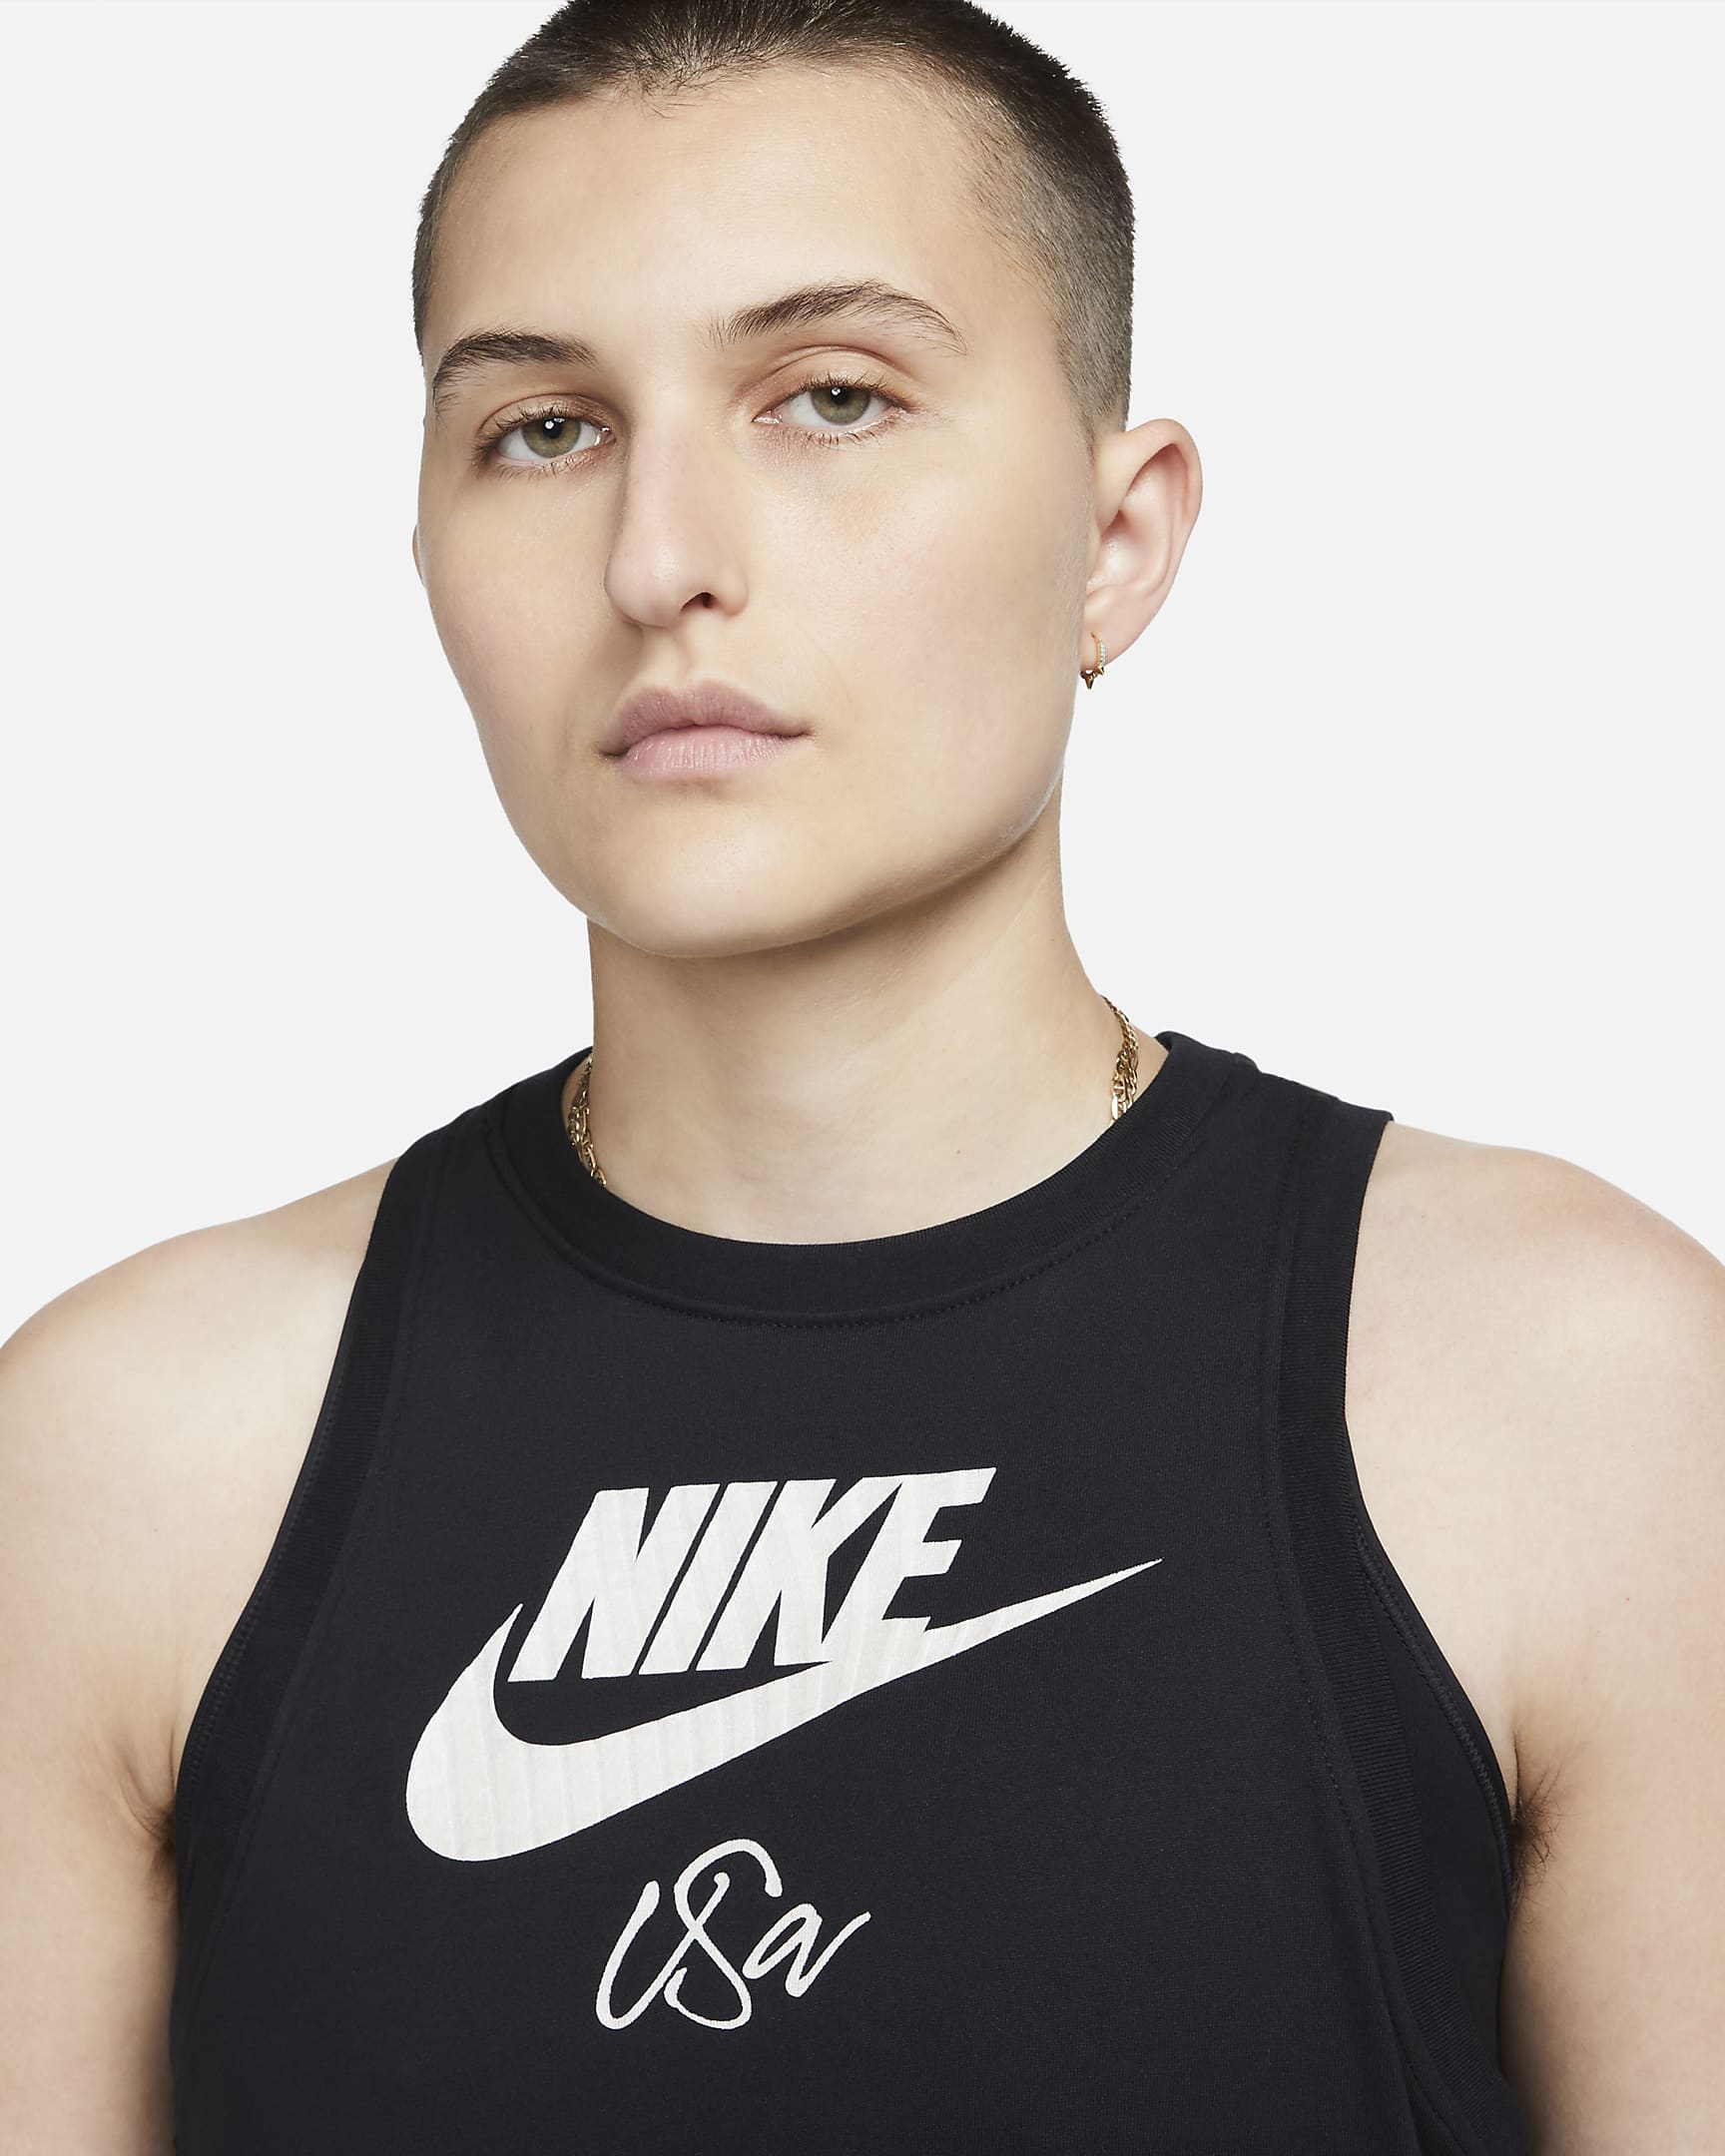 U.S. Women's Nike Tank Top. Nike.com